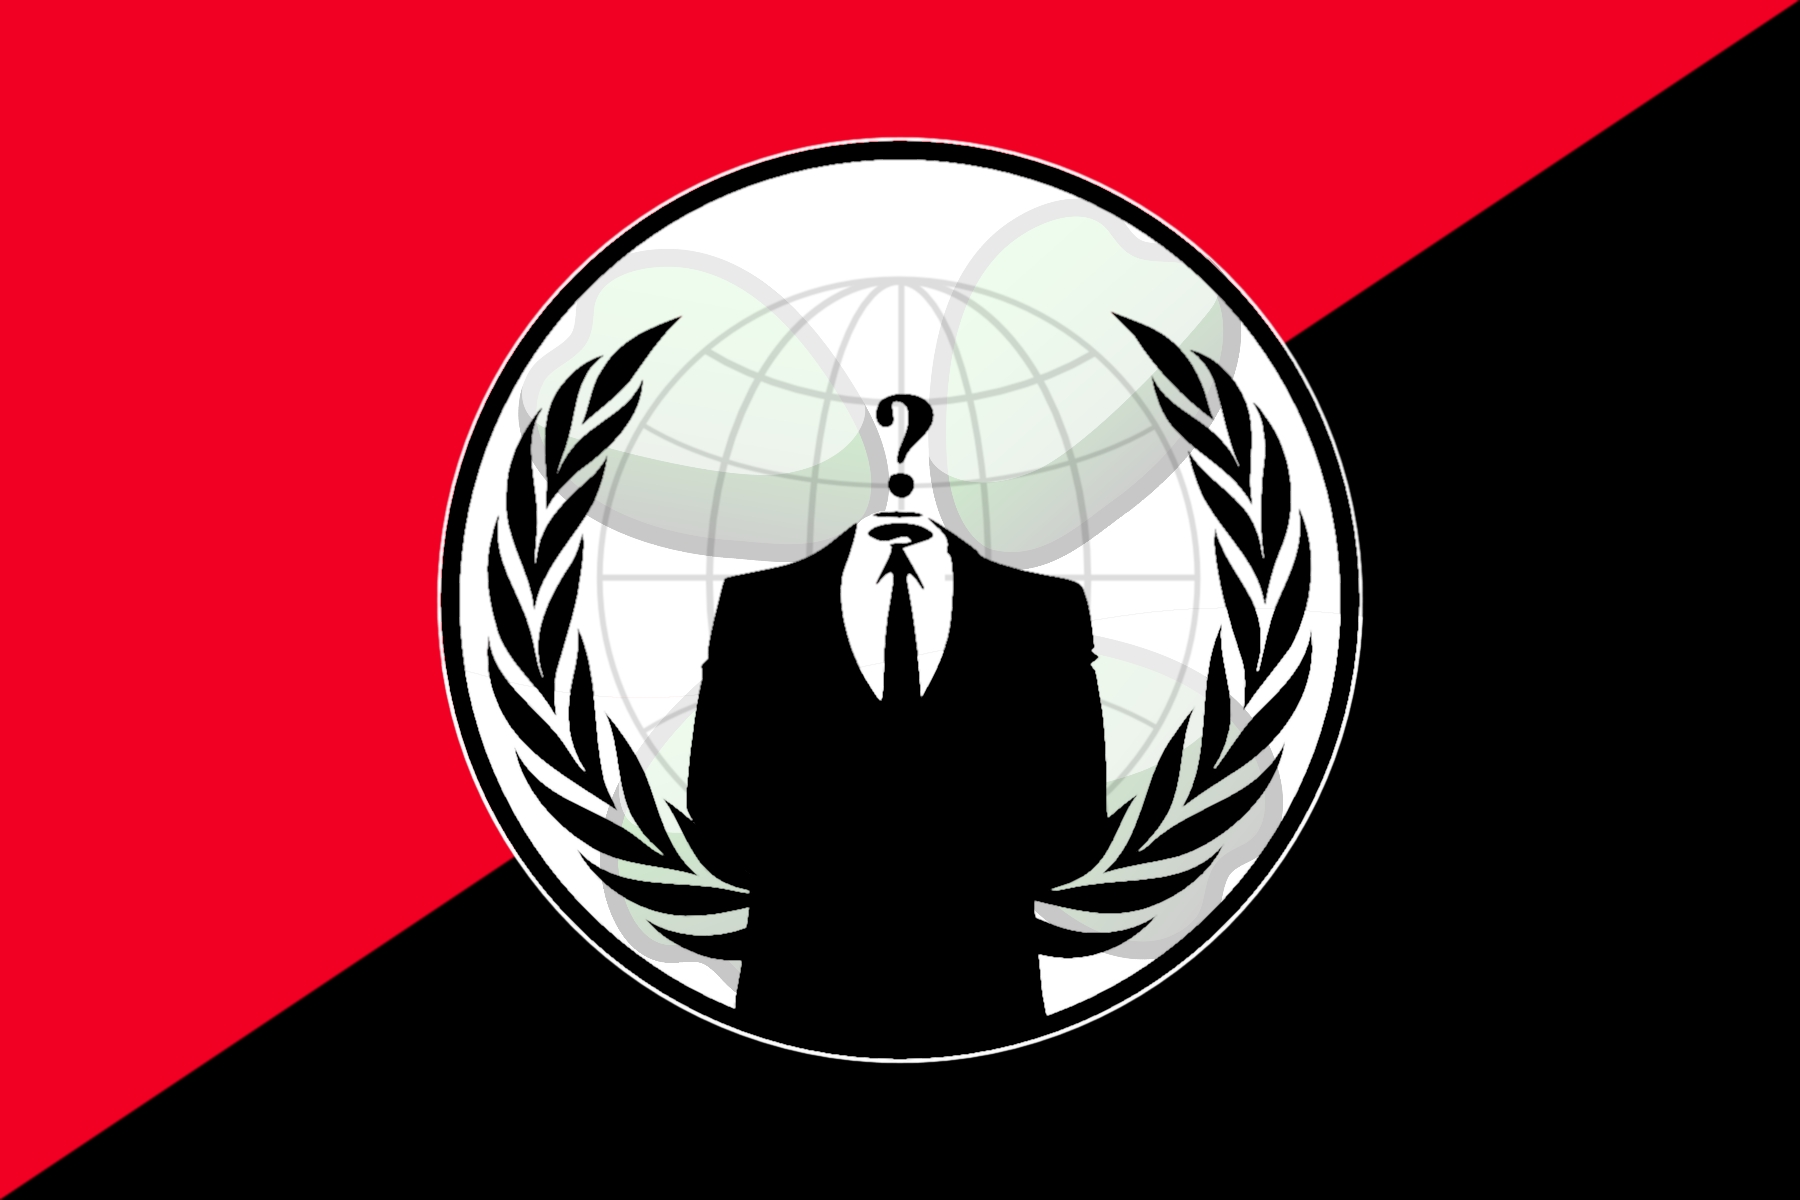 Hackare, Anonymous, Hacker, Integritet, Hackning, Censur, Internet, Hackerattack, Kina